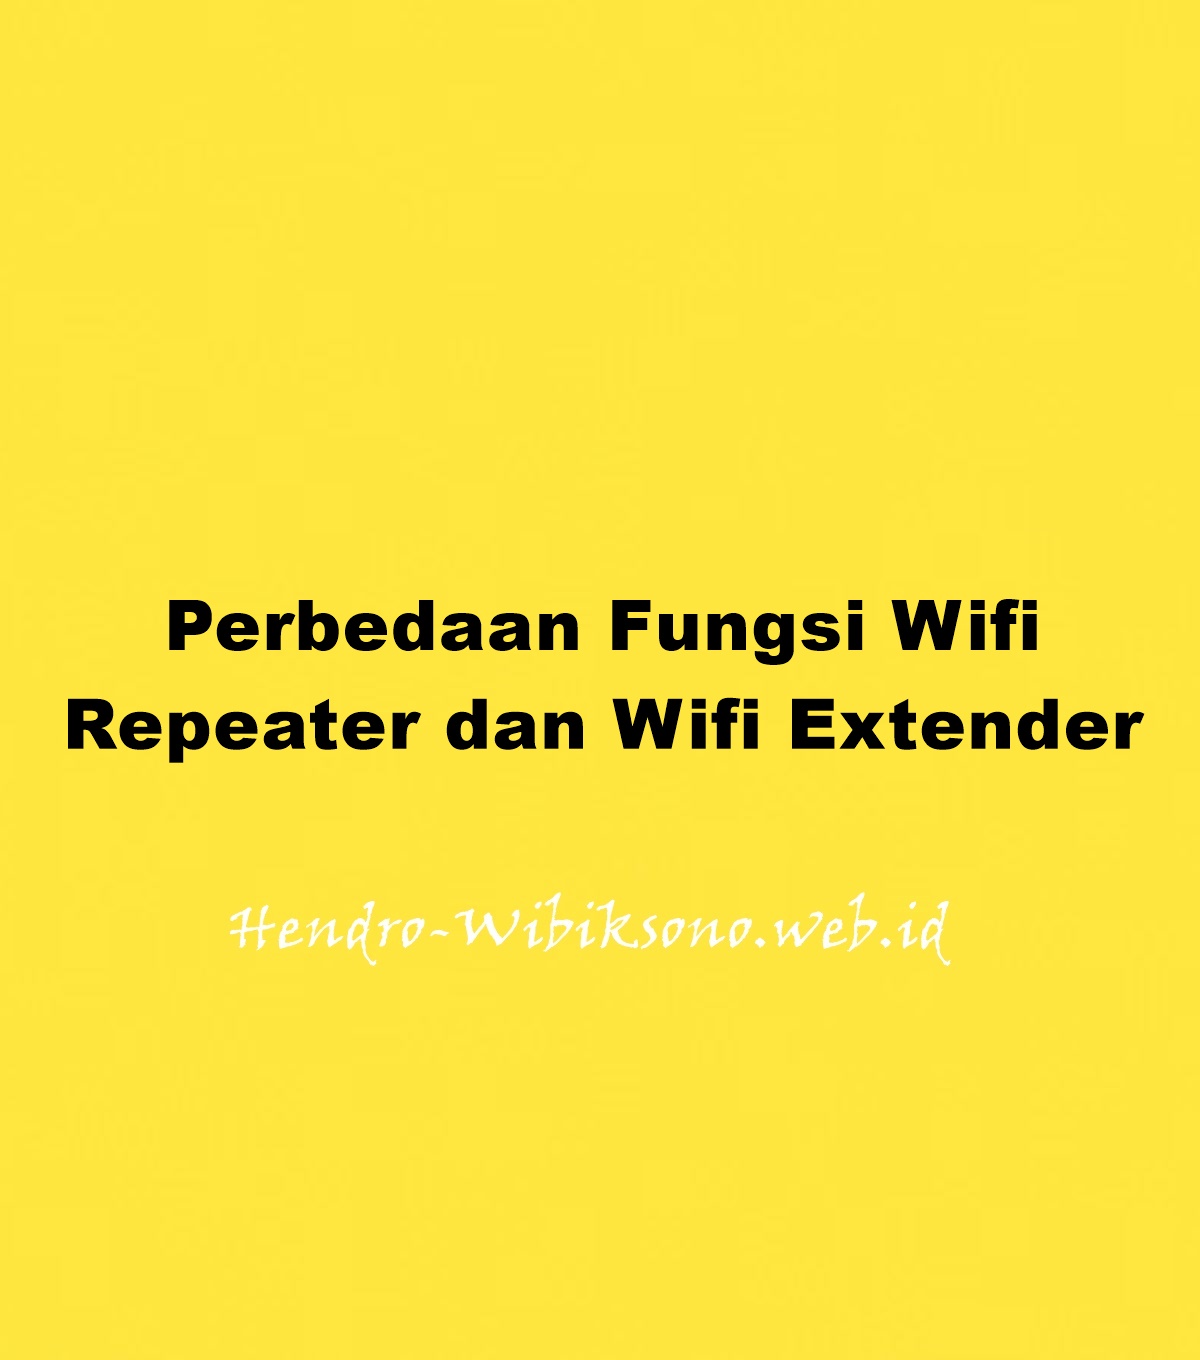 Perbedaan Fungsi Wifi Repeater Dan Wifi Extender